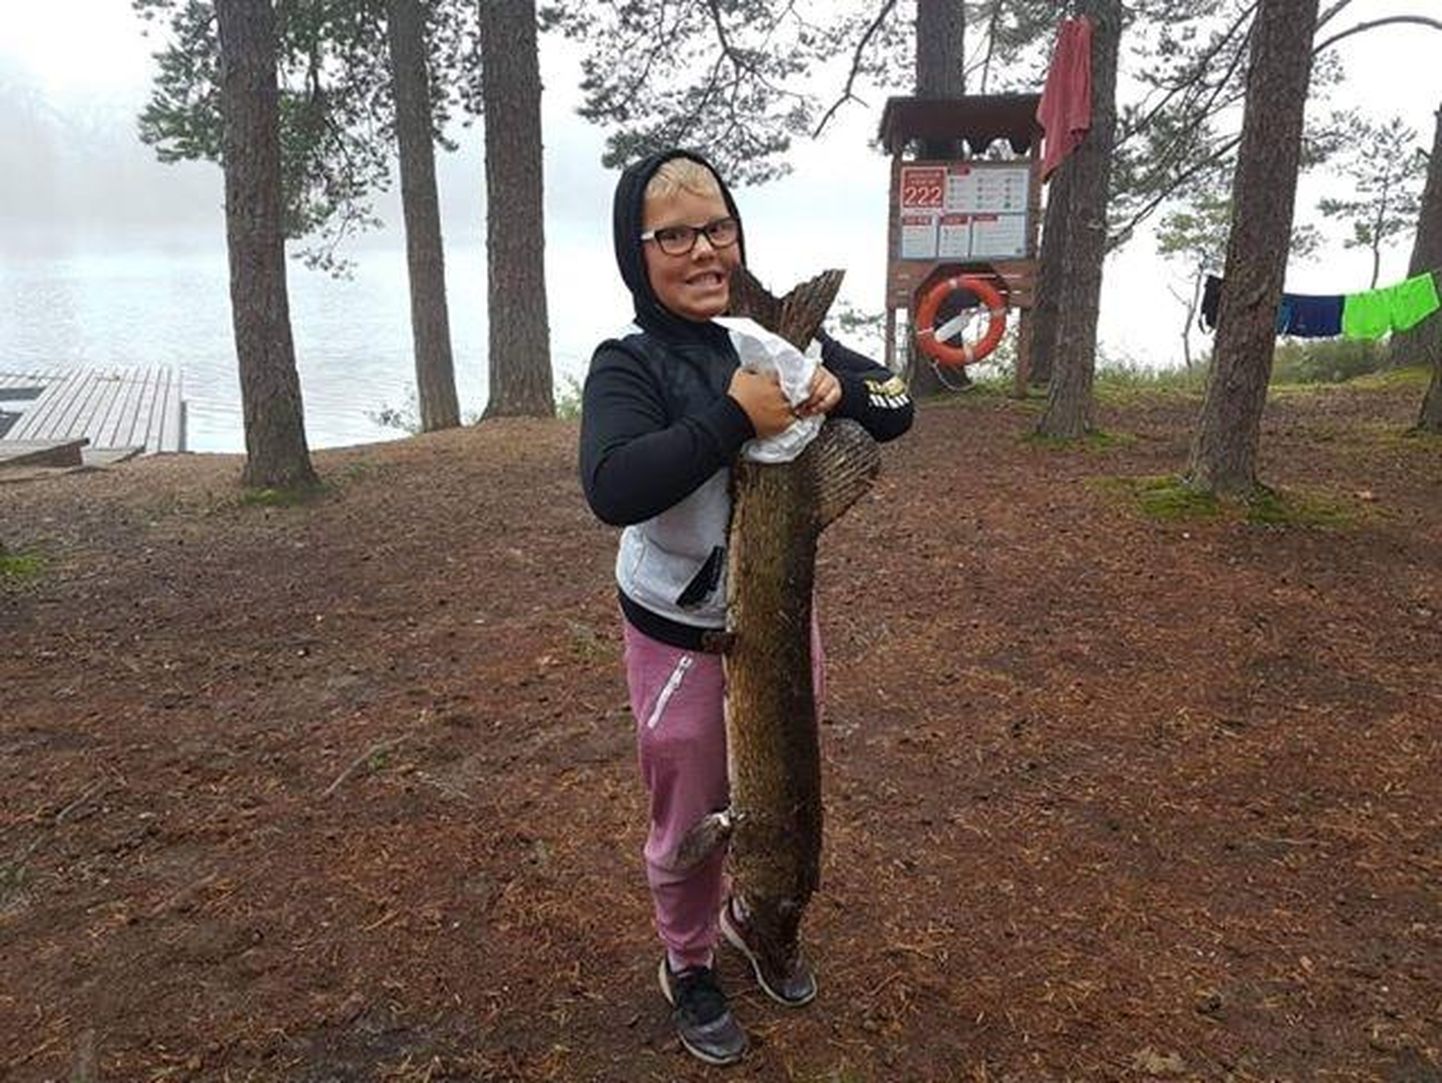 Üheksa-aastane Egert Hubel püüdis 31. augustil Paidra järvest senise elu suurima saagi, kui konksu otsa jäi kaheksa kilo kaaluv haug.